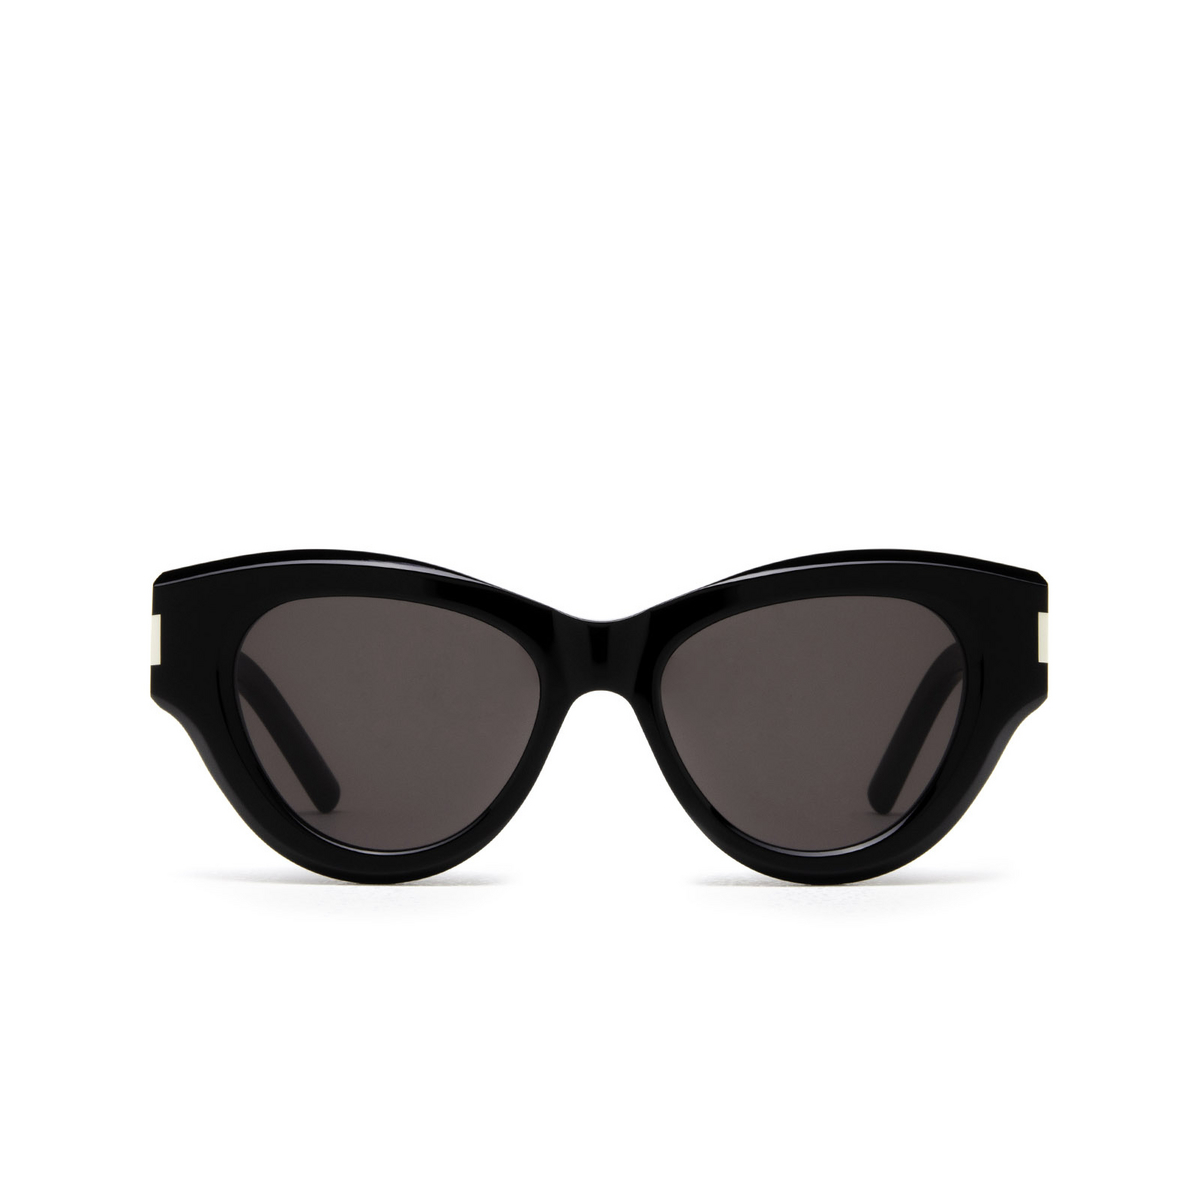 Saint Laurent® Cat-eye Sunglasses: SL 506 color Black 001 - 1/4.